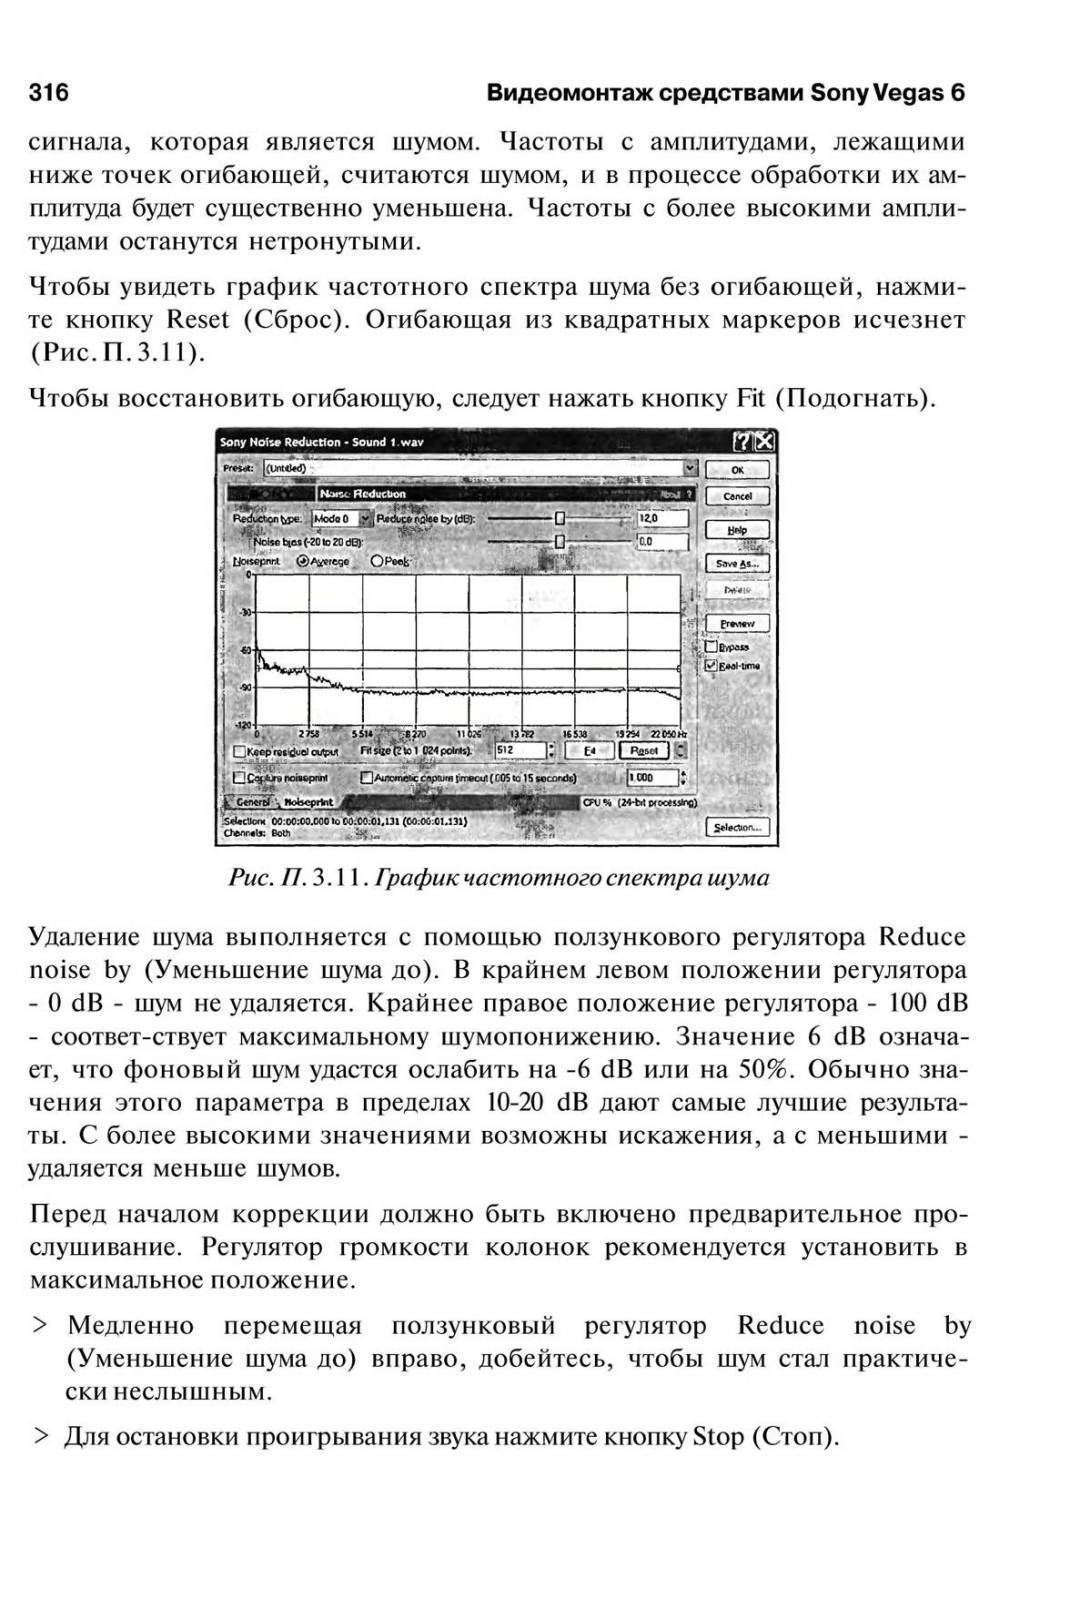 http://redaktori-uroki.3dn.ru/_ph/14/798880547.jpg